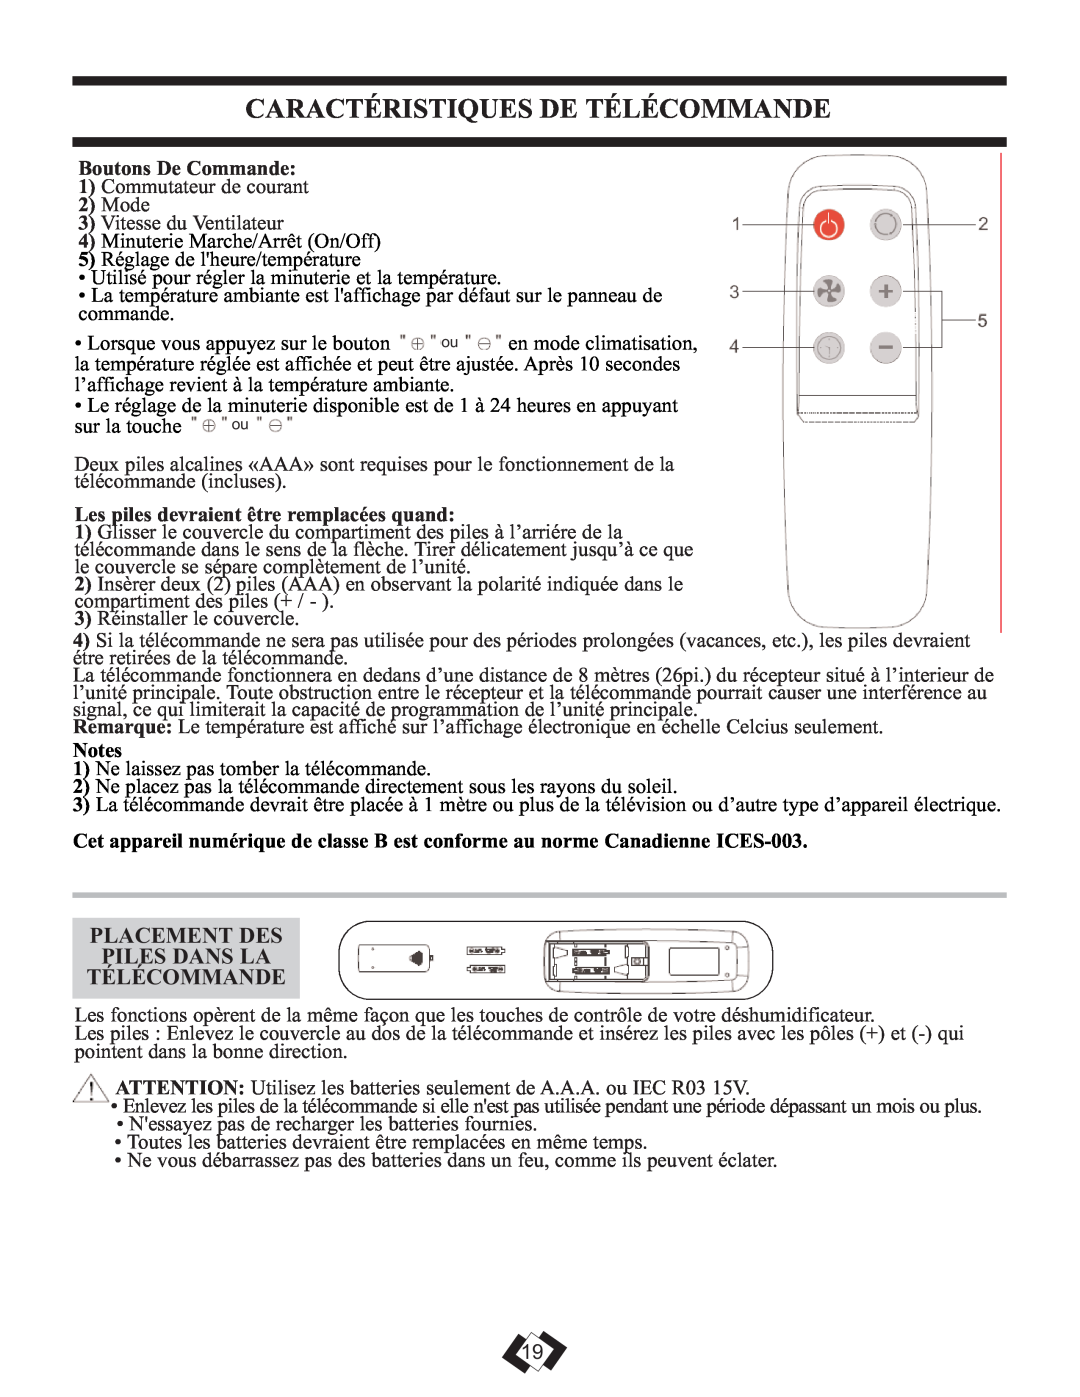 Danby DPAC 12099 manual Caractéristiques De Télécommande, Placement Des Piles Dans La Télécommande, Boutons De Commande 